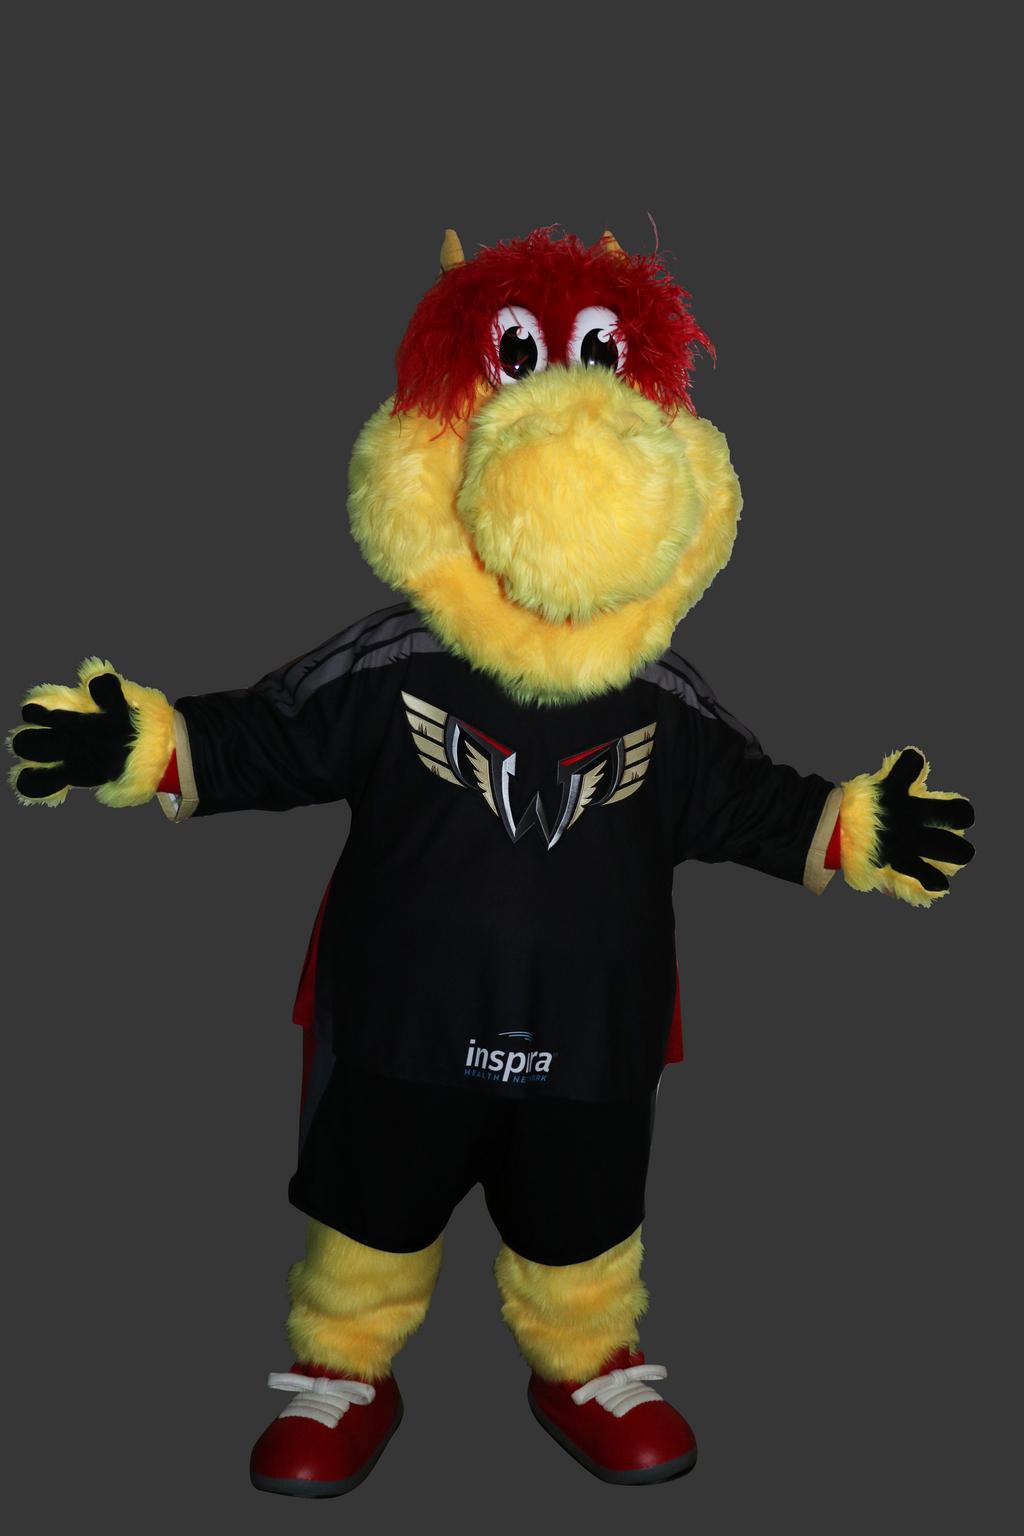 Philadelphia Union Unveils New Mascot 